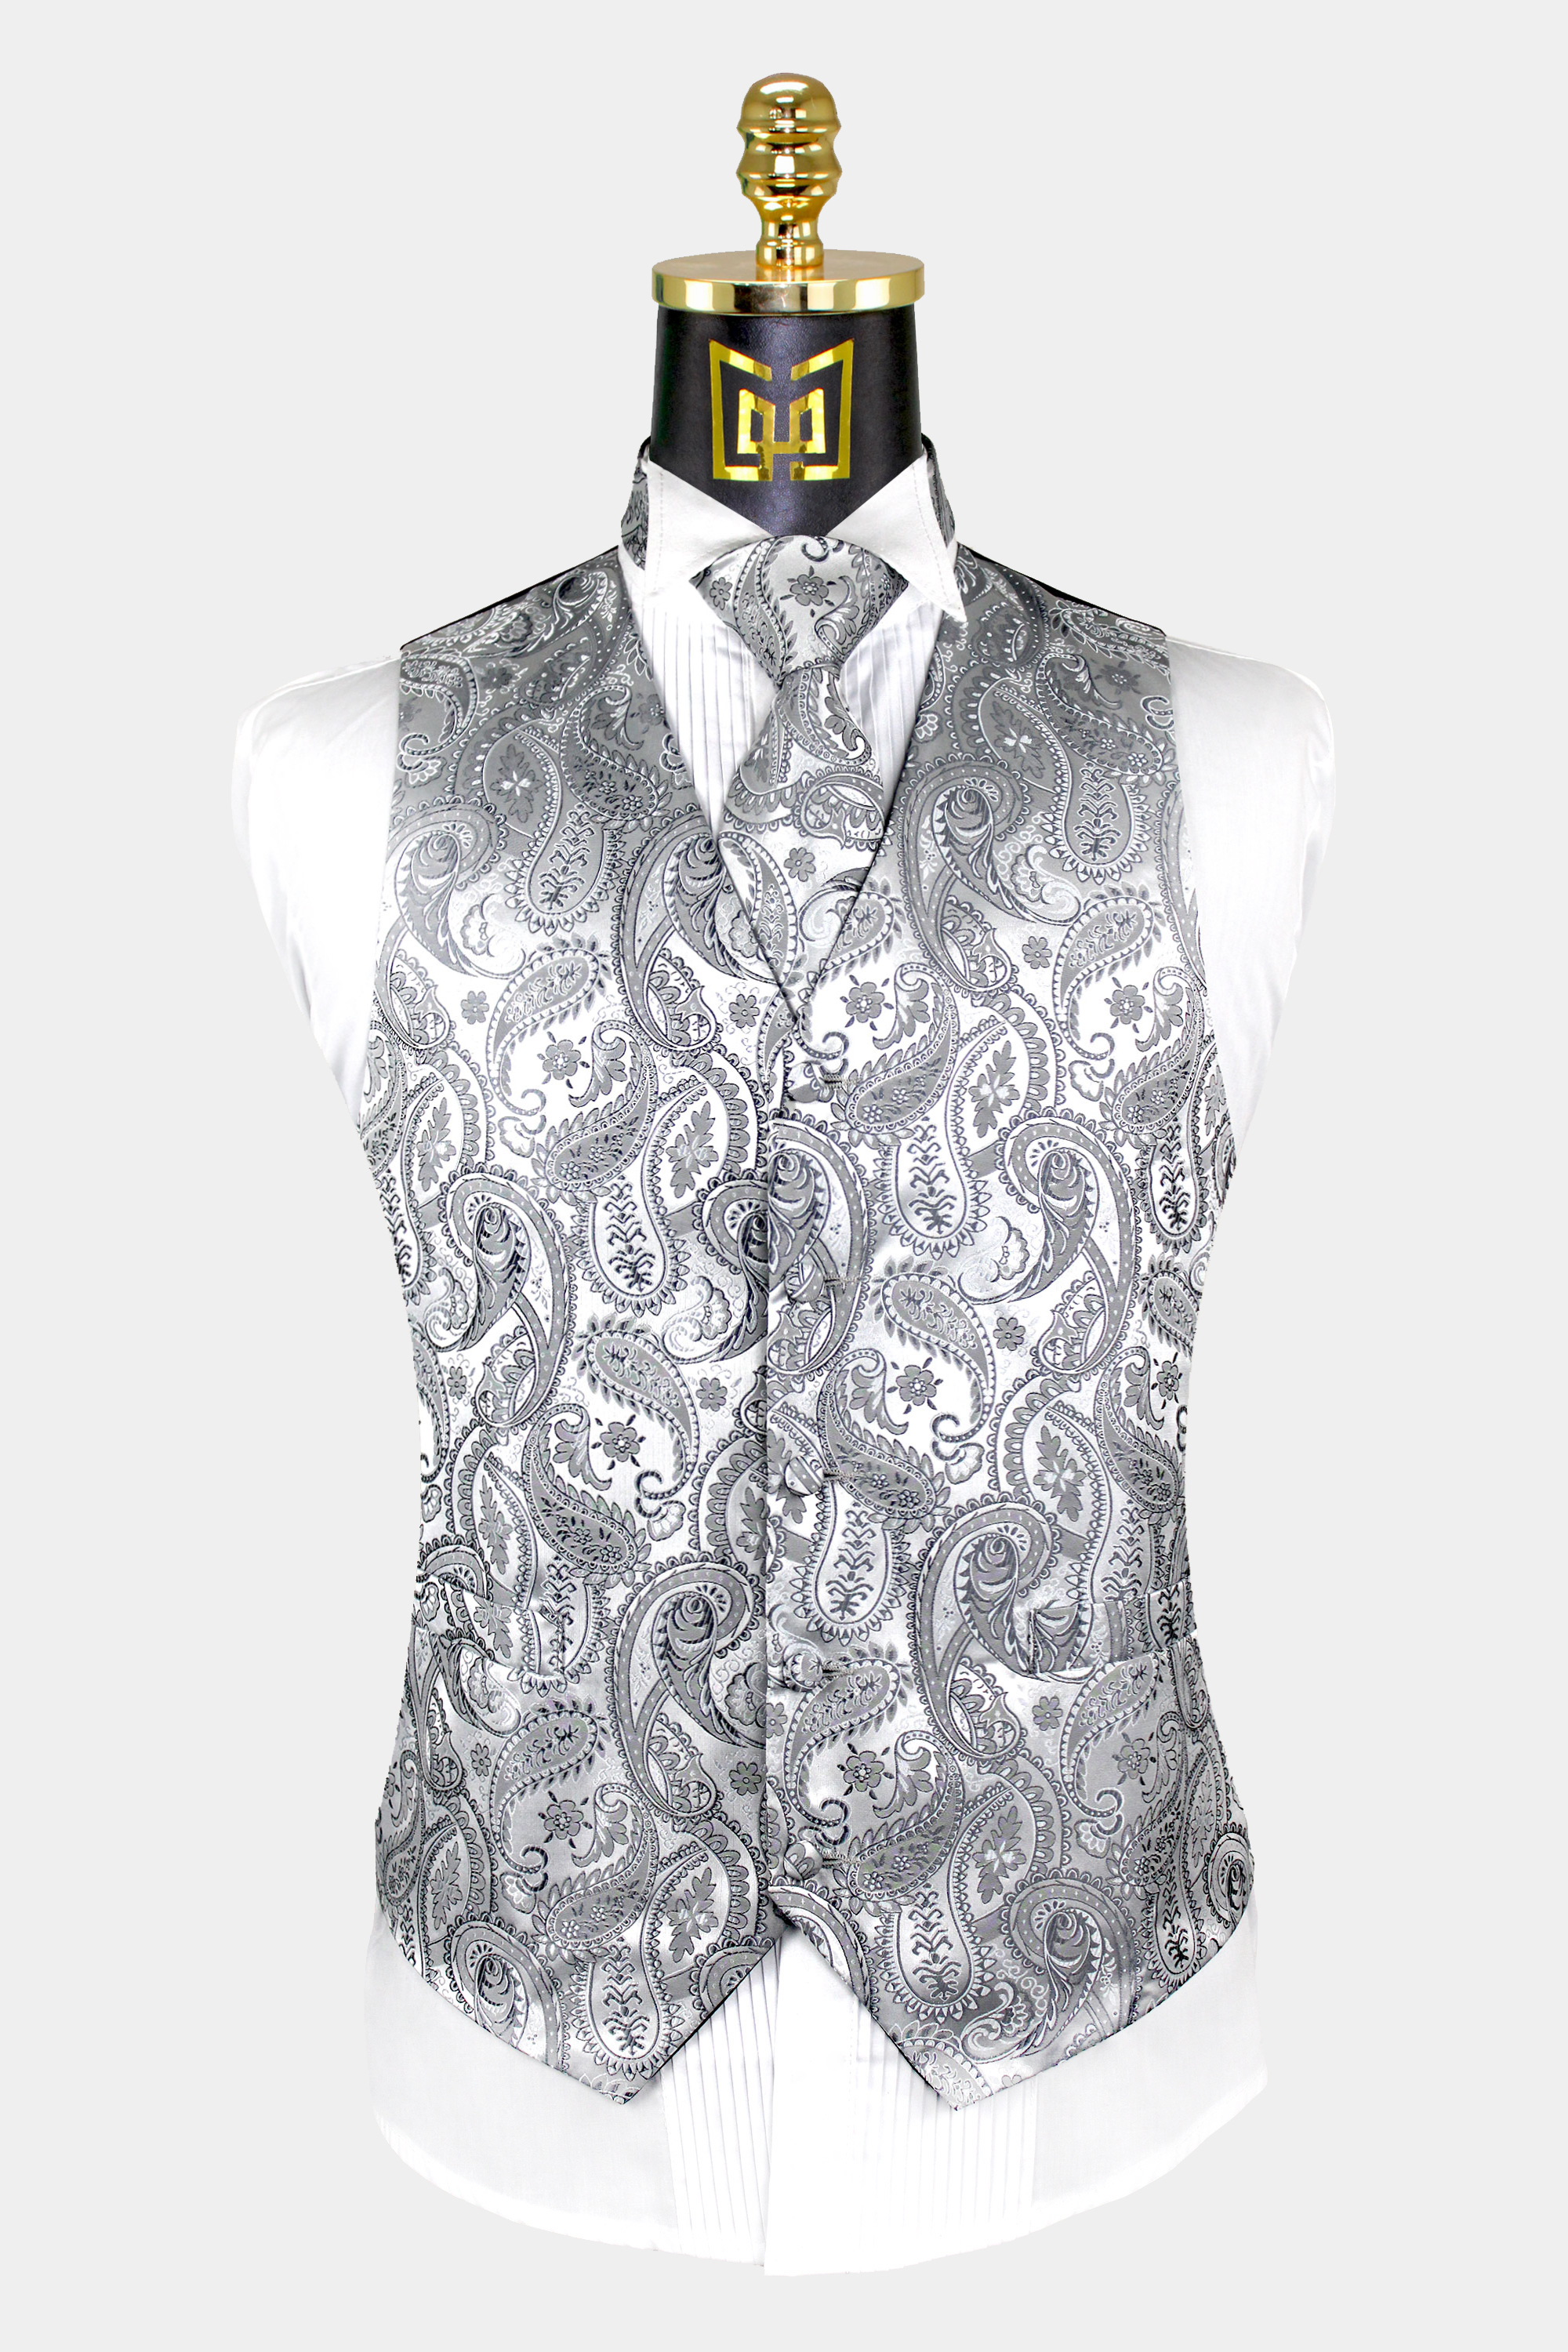 Silver Paisley Vest & Tie Set - 3 Piece